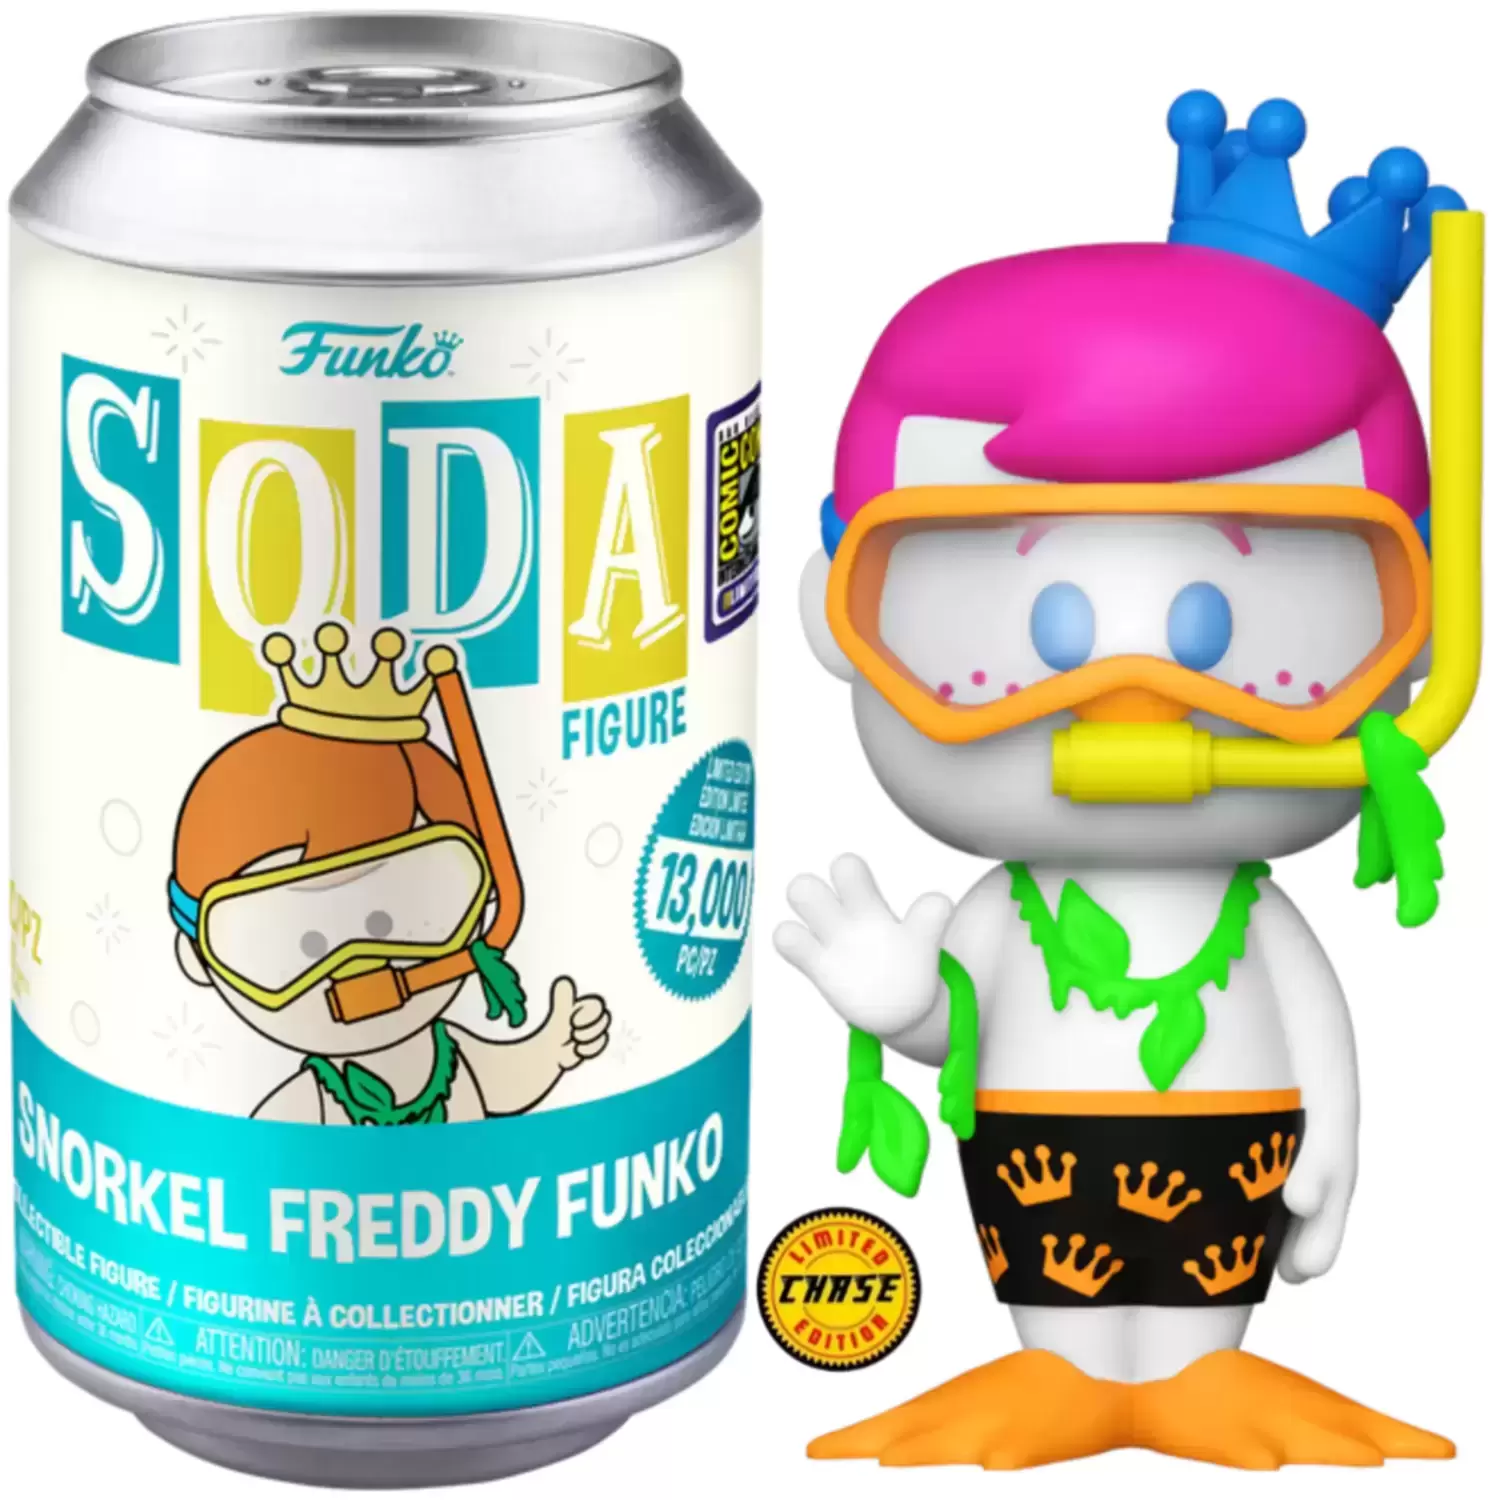 Vinyl Soda! - Funko - Snorkel Freddy Funko Chase